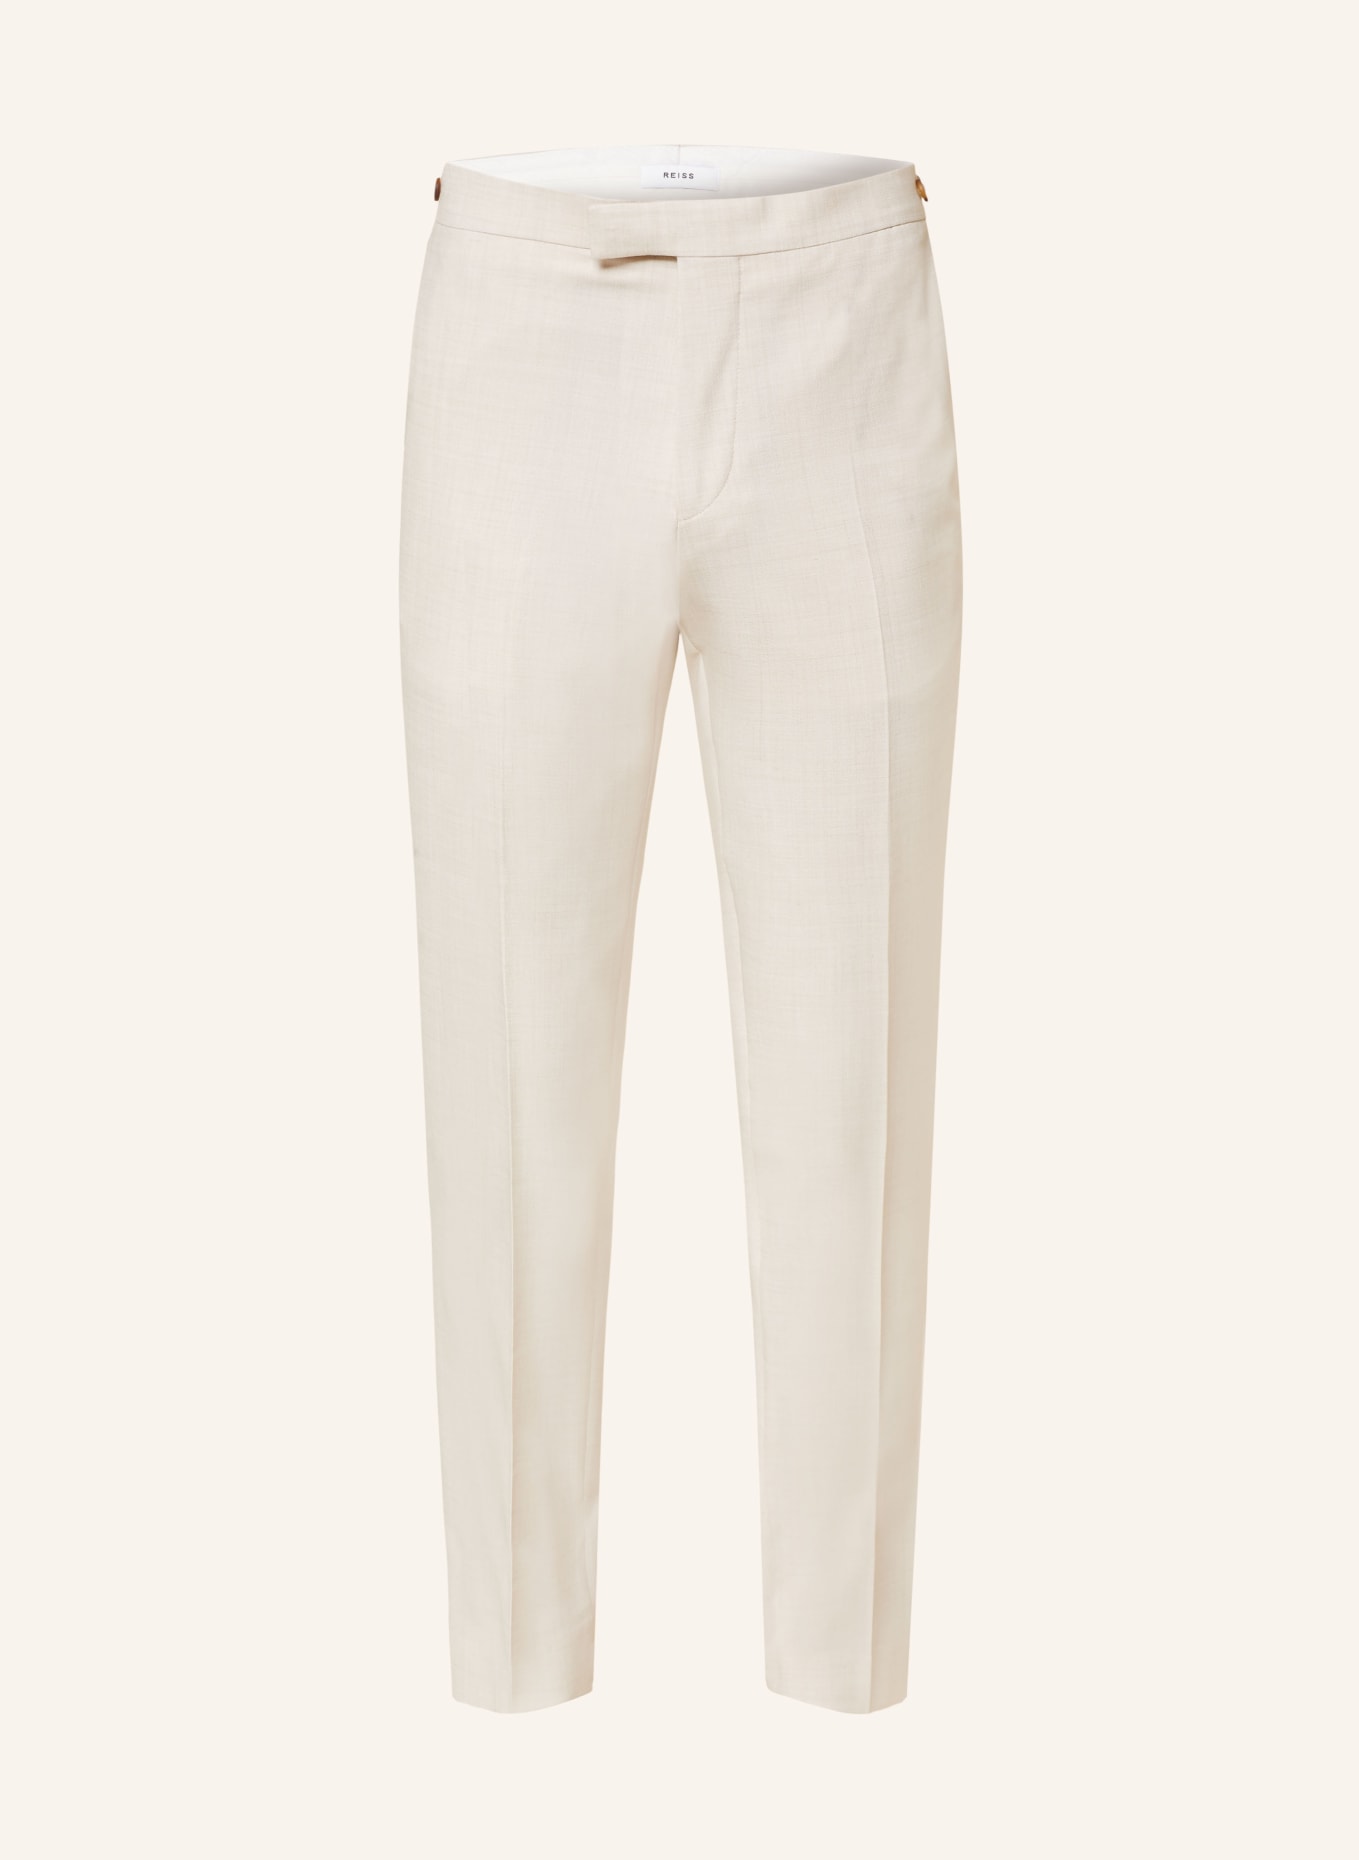 REISS Spodnie garniturowe BELMONT extra slim fit, Kolor: 04 STONE (Obrazek 1)